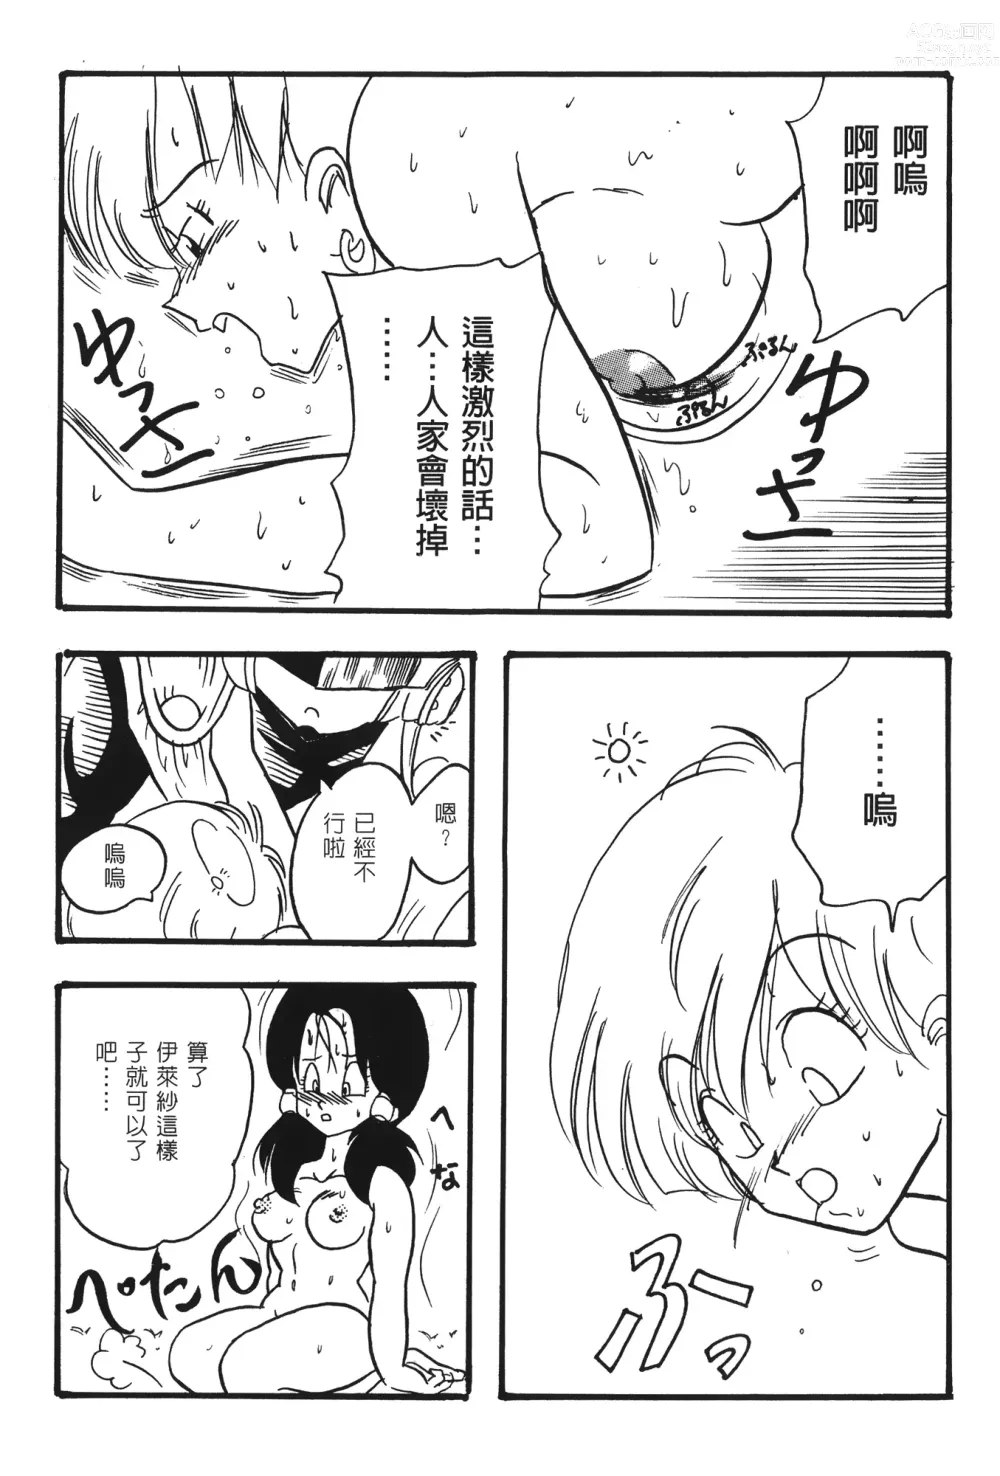 Page 24 of doujinshi ドラゴンパール 02